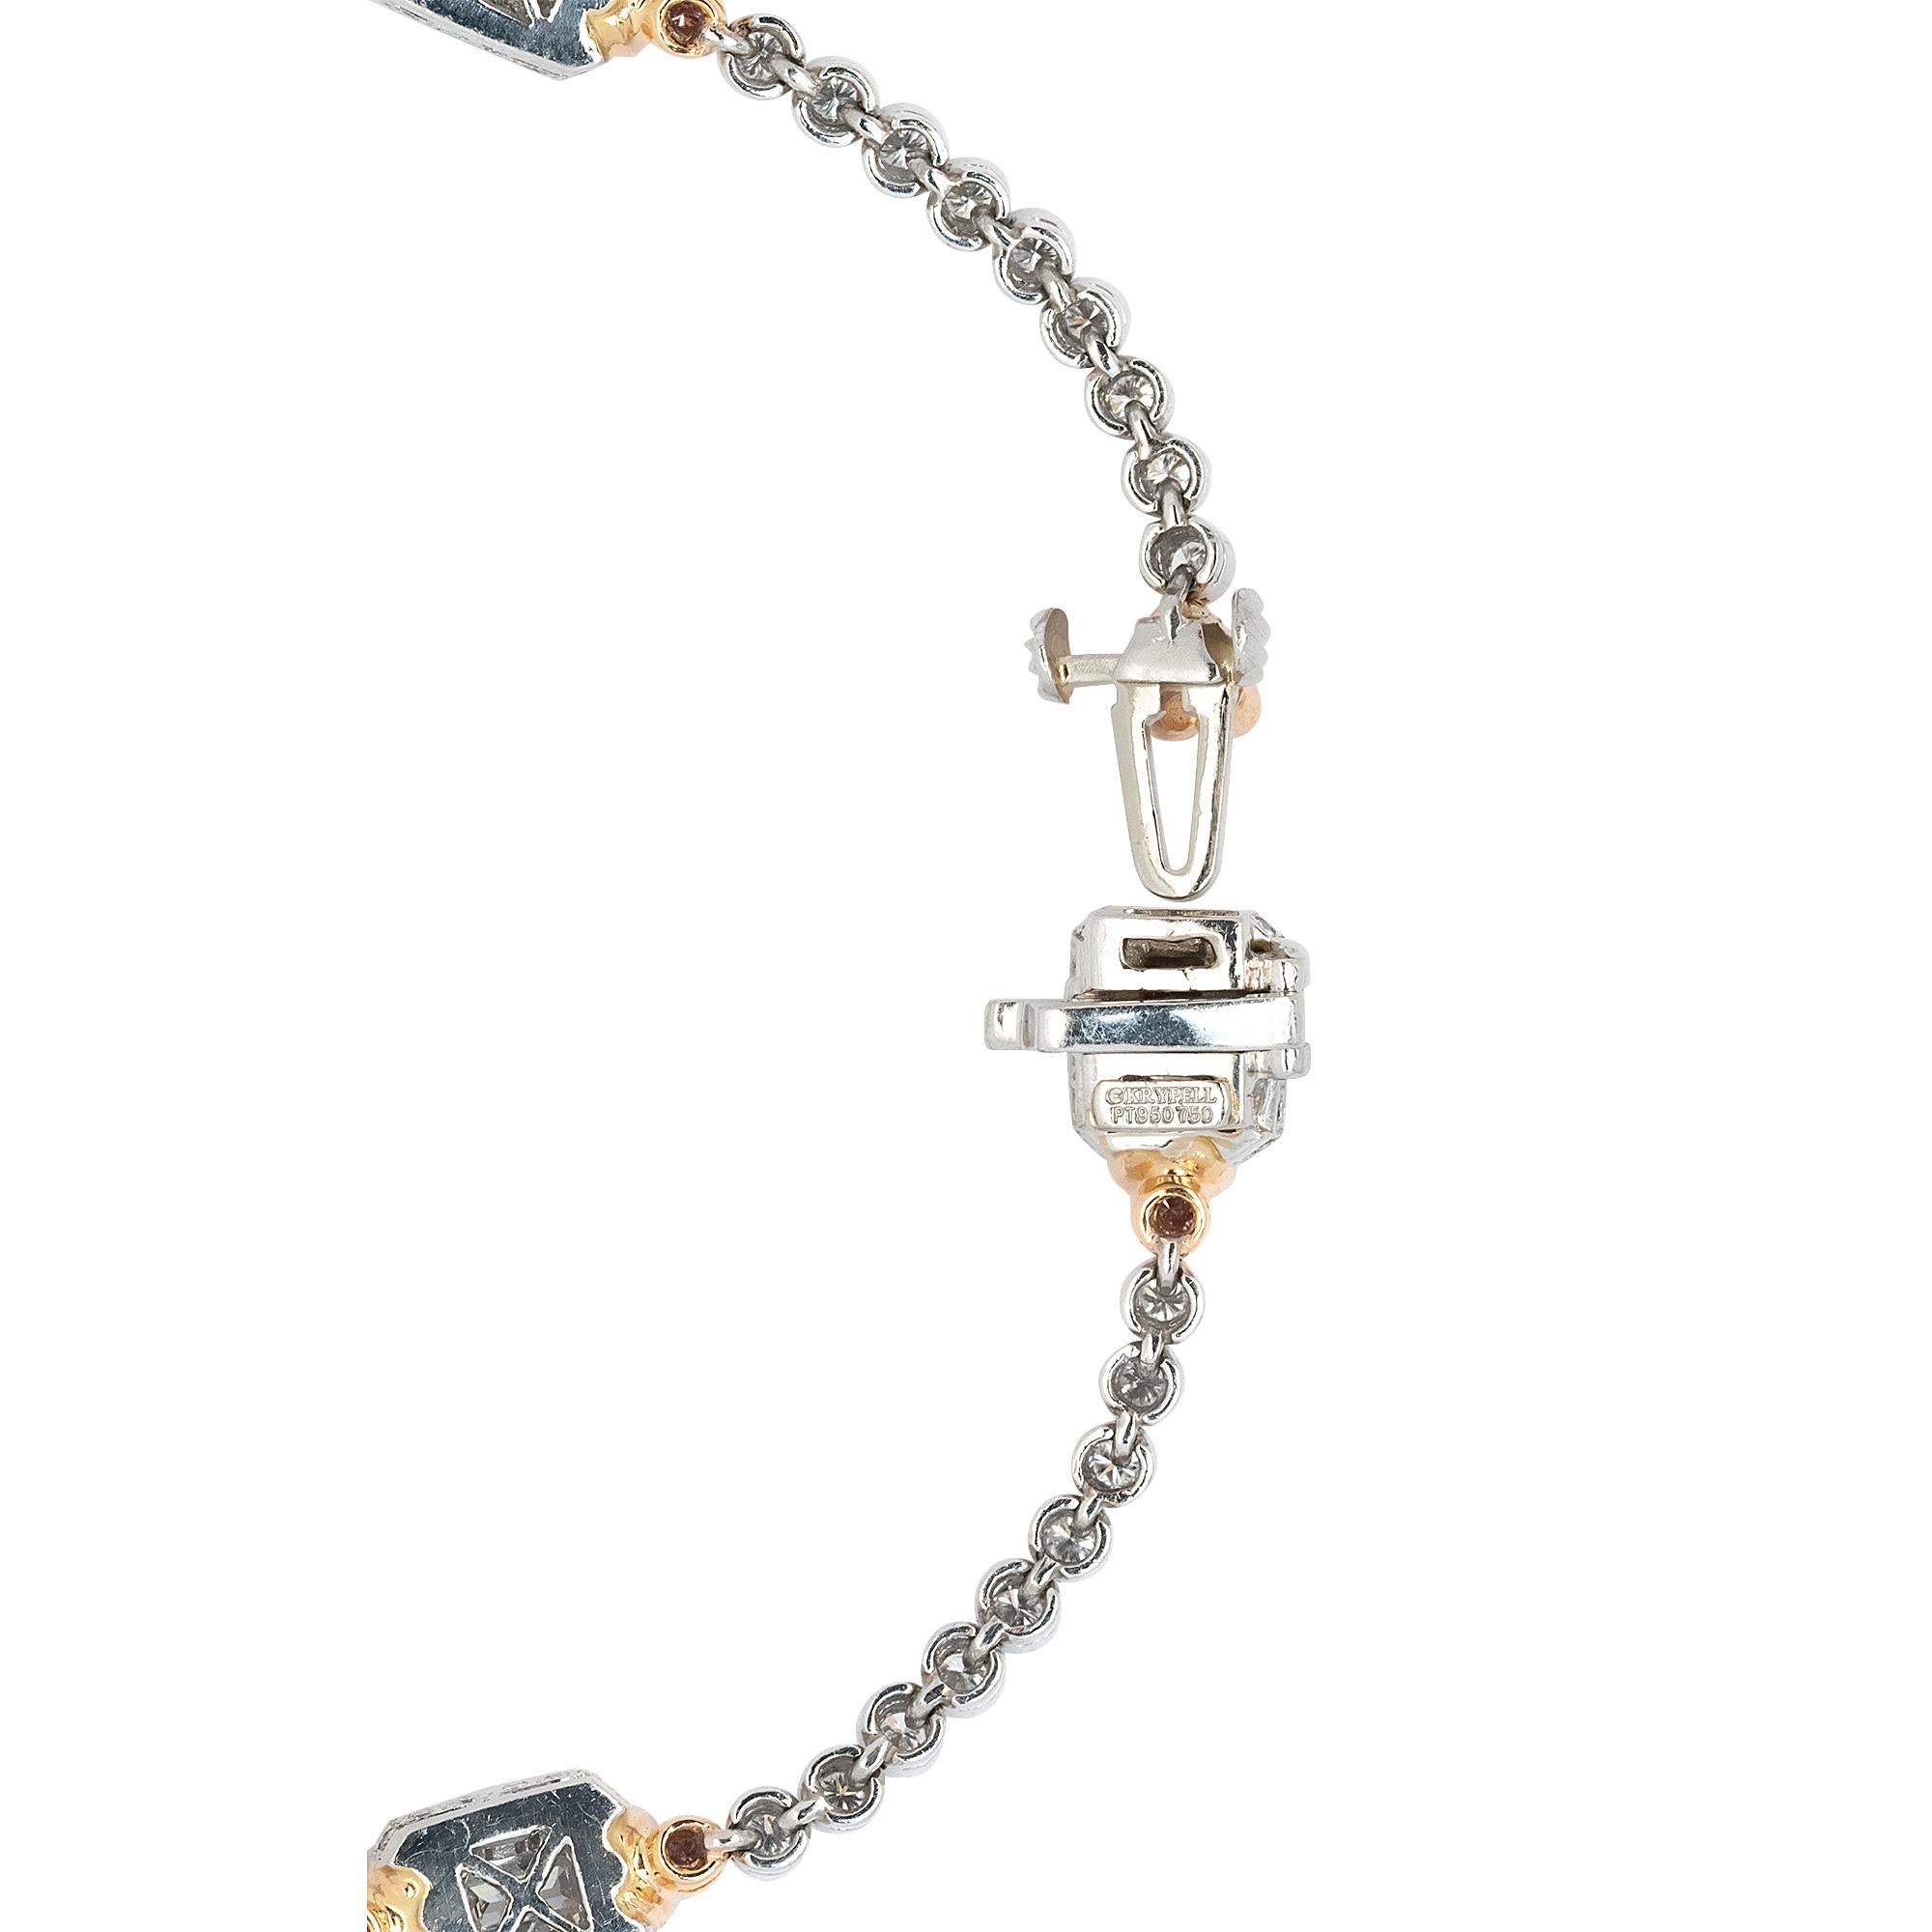 Women's 18k Gold Natural Diamond Charles Krypell Bracelet. For Sale